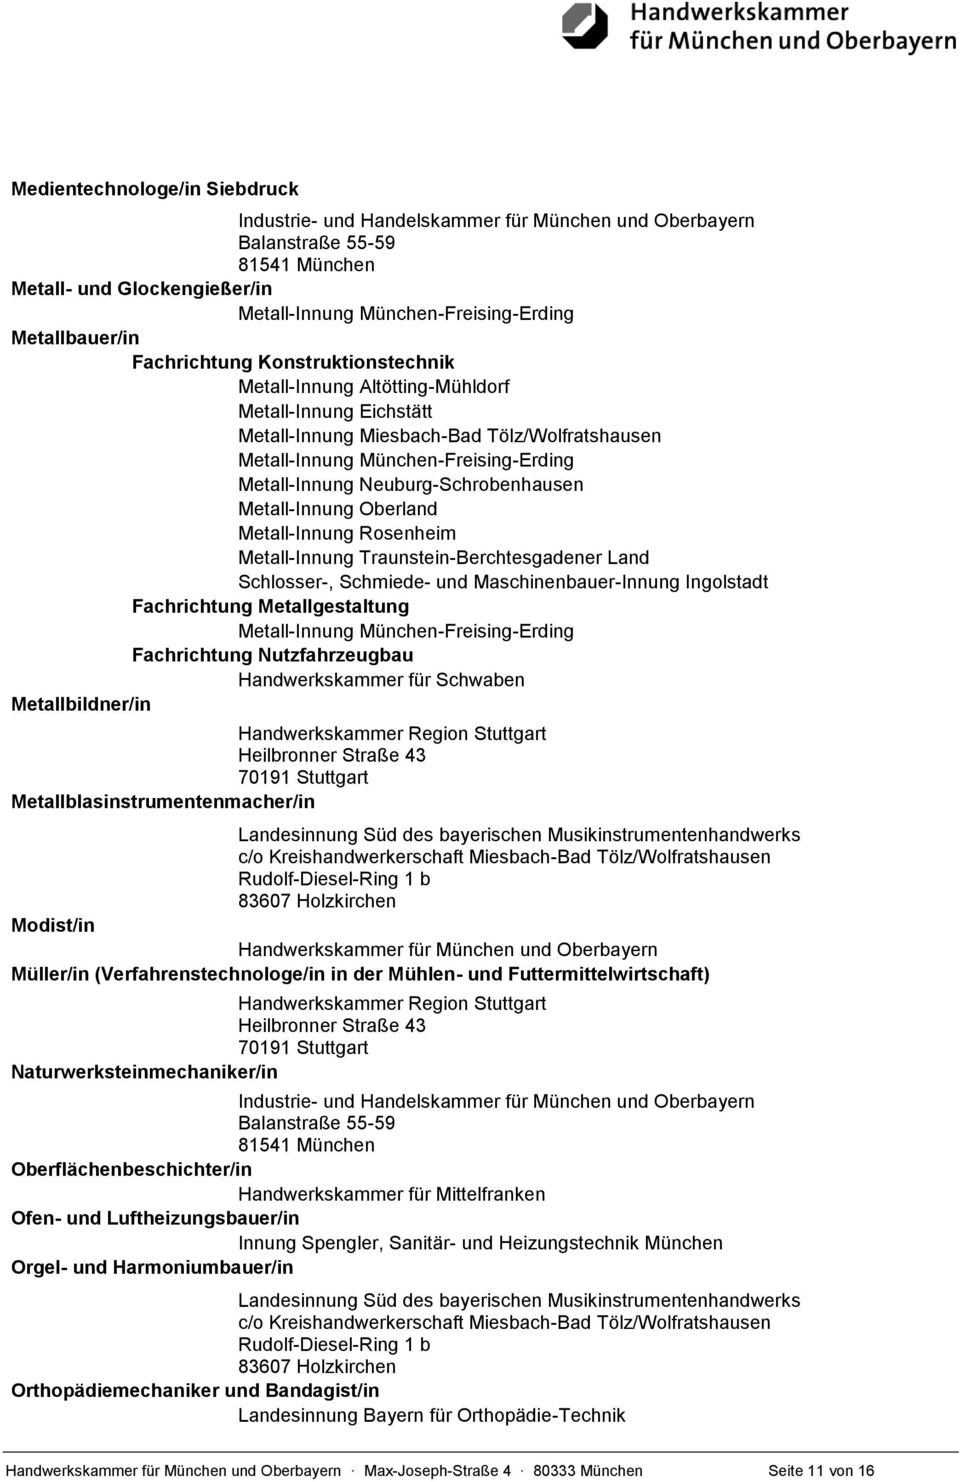 Traunstein-Berchtesgadener Land Schlosser-, Schmiede- und Maschinenbauer-Innung Ingolstadt Fachrichtung Metallgestaltung Metall-Innung München-Freising-Erding Fachrichtung Nutzfahrzeugbau